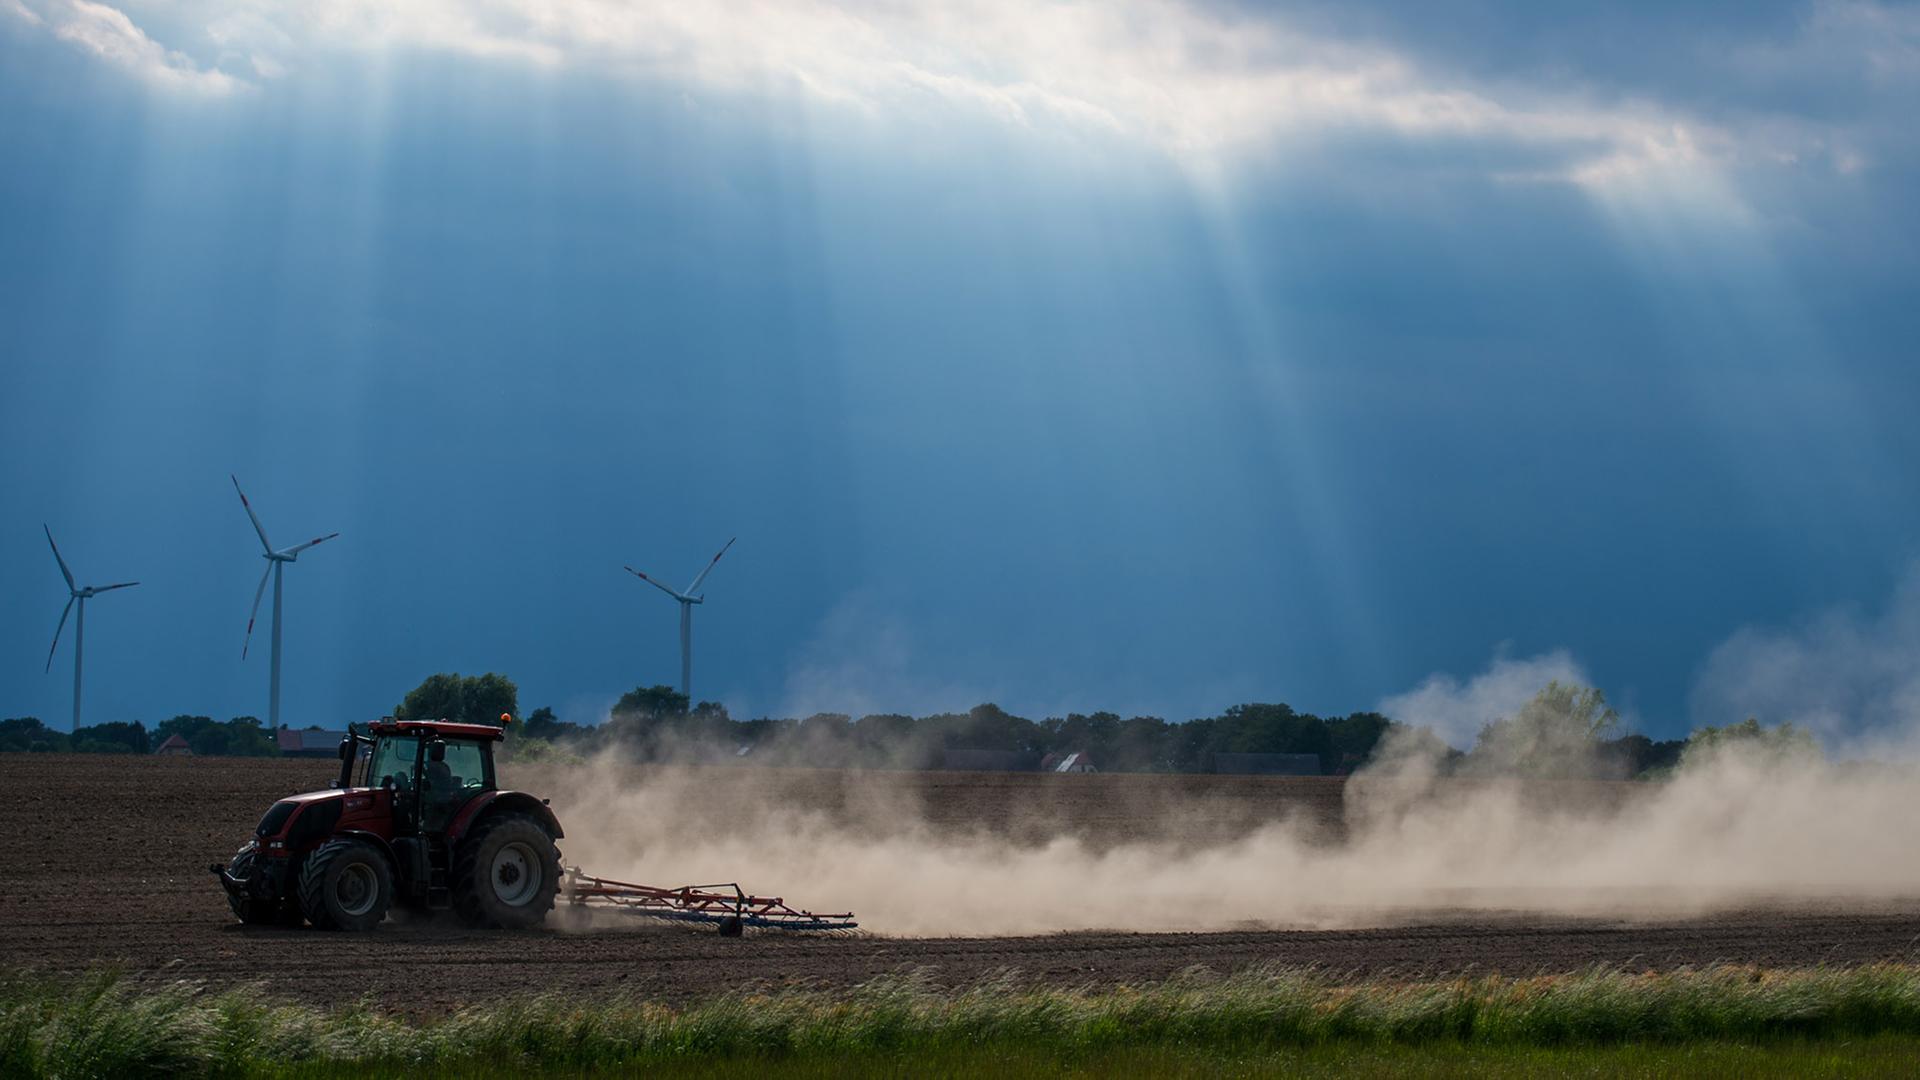 Man sieht einen Traktor als schwarze Silhouette und die nachfolgende Staubwolke im Gegenlicht. Durch die Wolken scheinen Sonnenstrahlen.